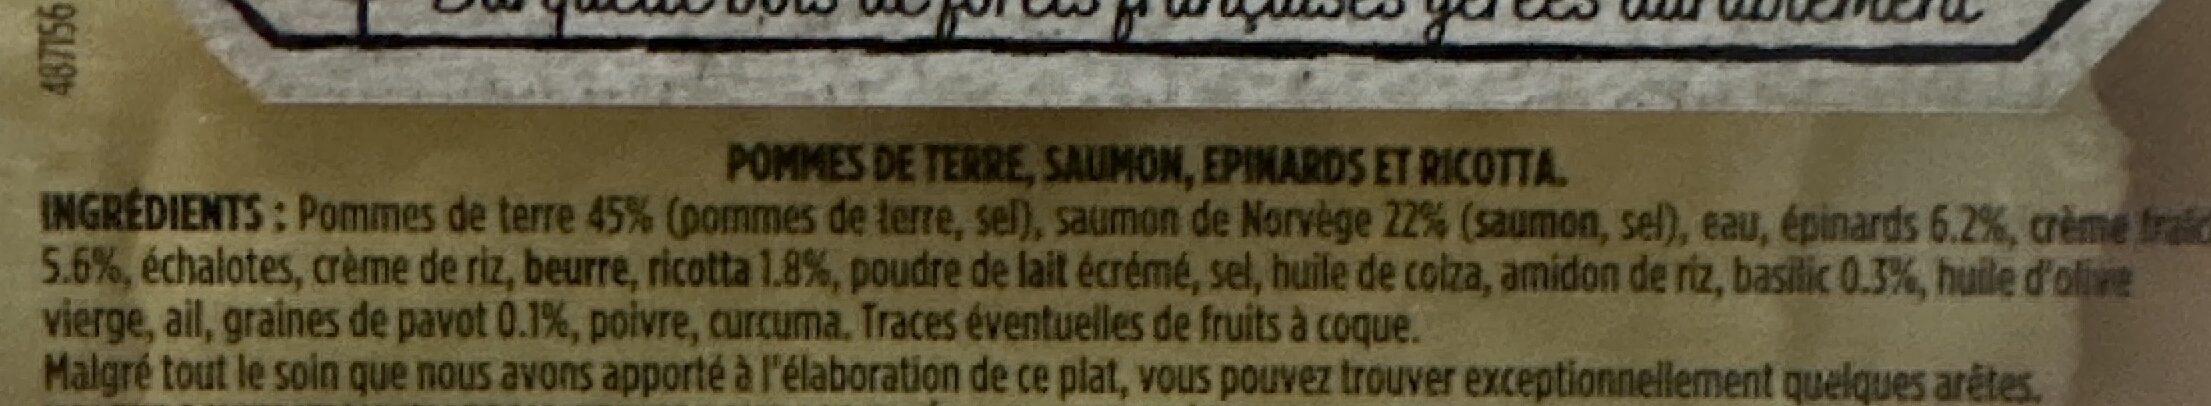 Pavé de saumon Ecrasé de pommes de terre et crème ricotta épinard - Ingredienti - fr